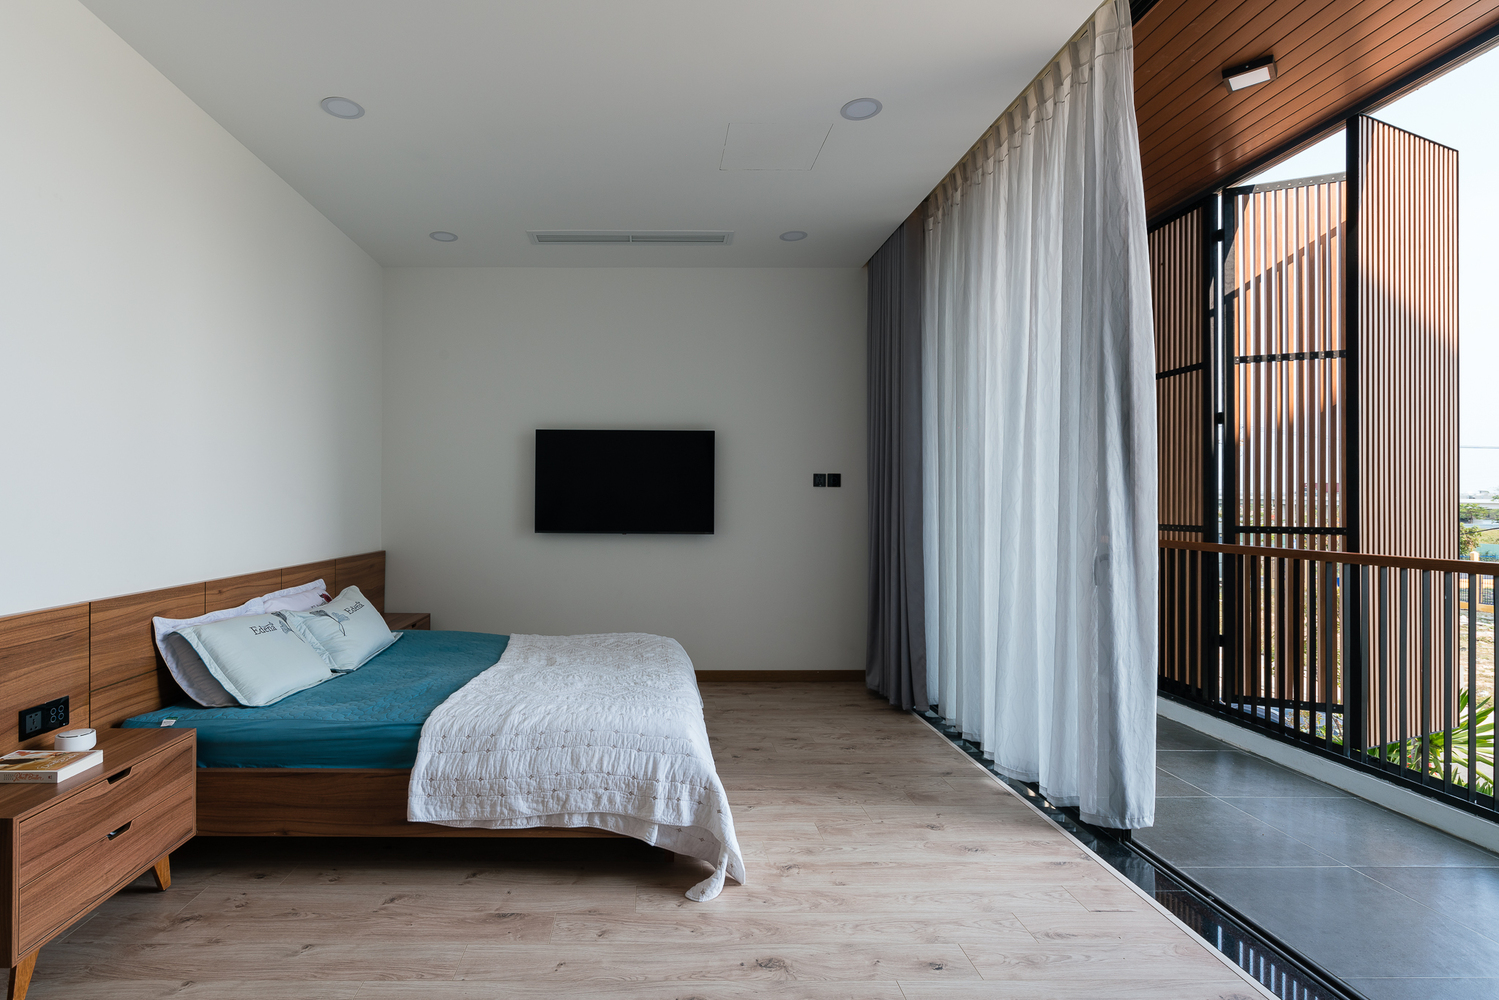 hình ảnh phòng ngủ phong cách tối giản với giường gỗ, ga màu xanh dương, hiên rộng thoáng, rèm cửa 2 lớp màu trắng